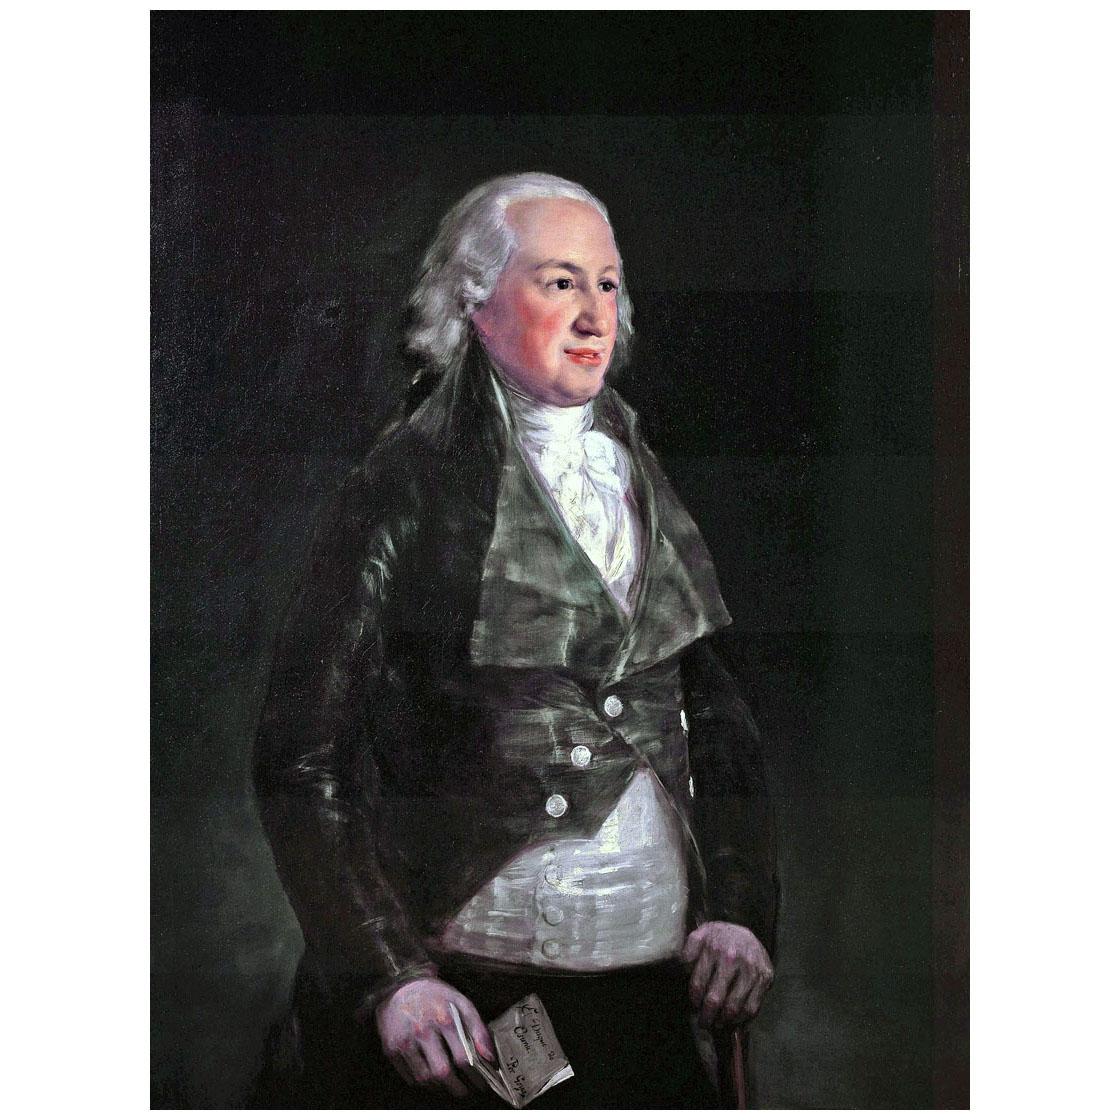 Francisco de Goya. Don Pedro duque de Osuna. 1798. Frick Collection NY